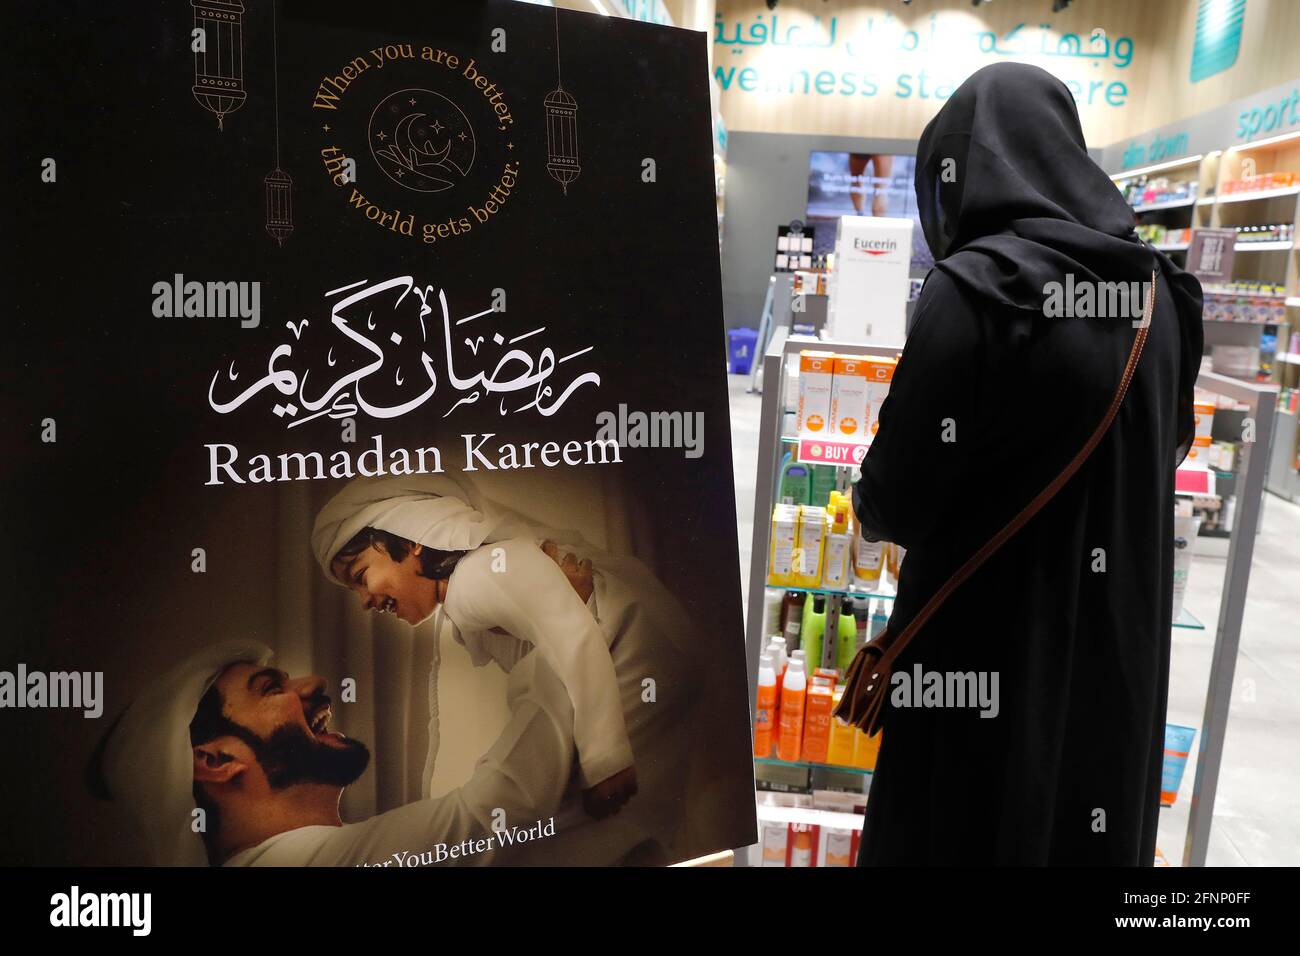 Ramadan kareem arabische Kalligraphie Gruß mit Halbmond und Laternen. Muslimische Frau mit Abaya im Geschäft. Dubai. Vereinigte Arabische Emirate Stockfoto